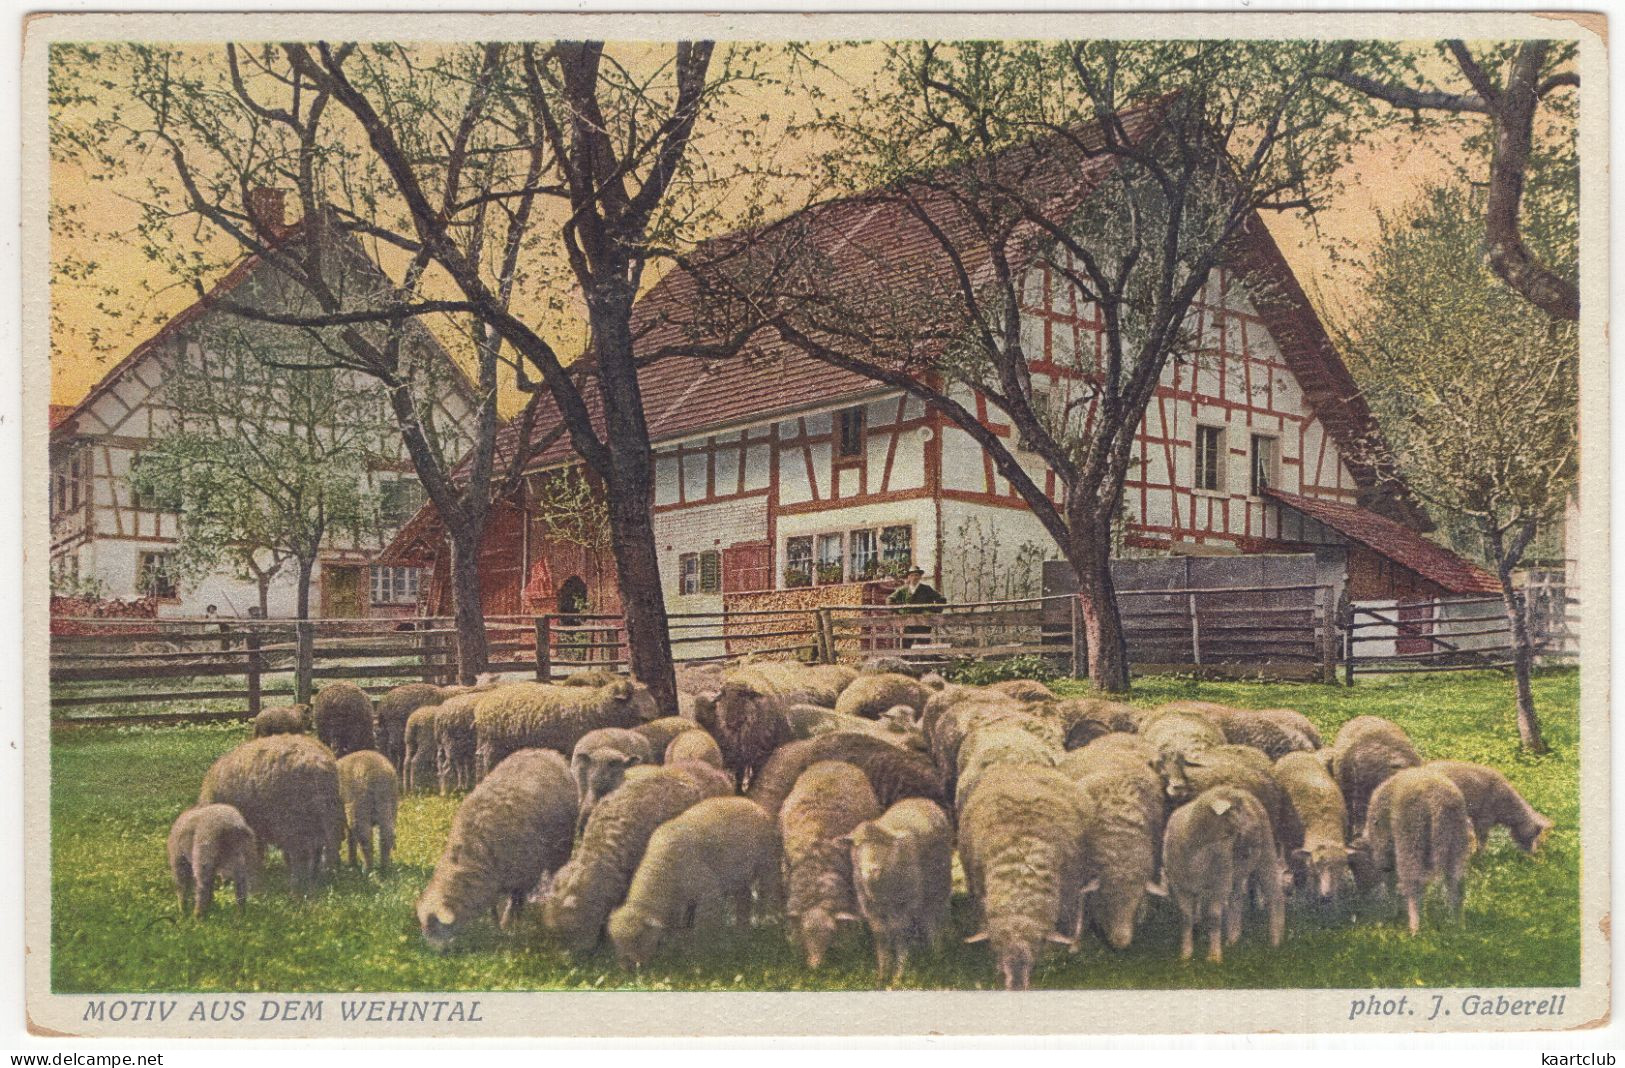 Motiv Aus Dem Wehntal - (Schweiz-Suisse-Switzerland) - 2735 J. Gaberell, Thalwil-Zürich - Schäfe/Mouton/Sheep - Dielsdorf